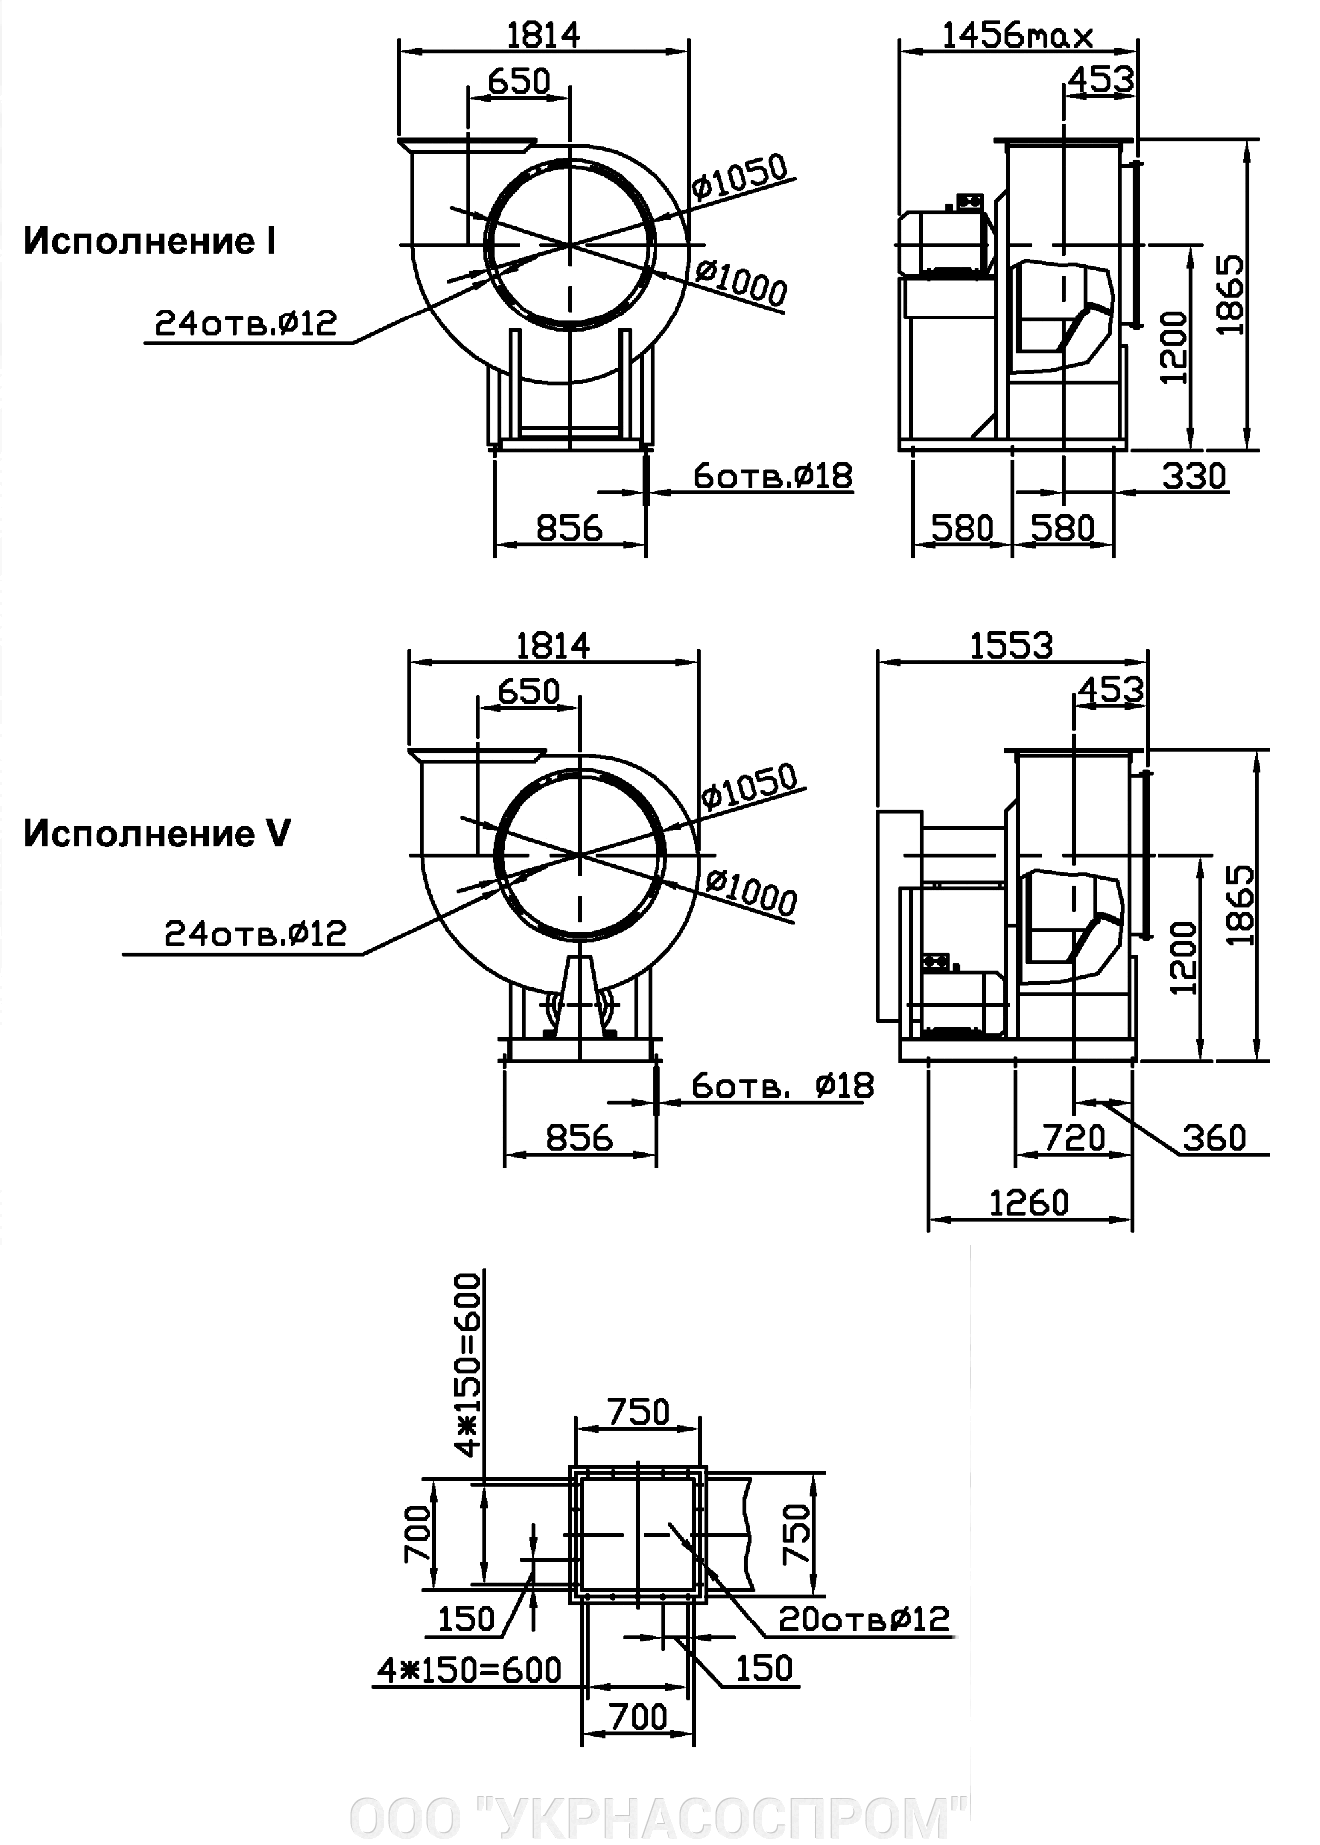 Вентилятор ВЦ 4-75 №10 5,5 кВт 750 об/мин